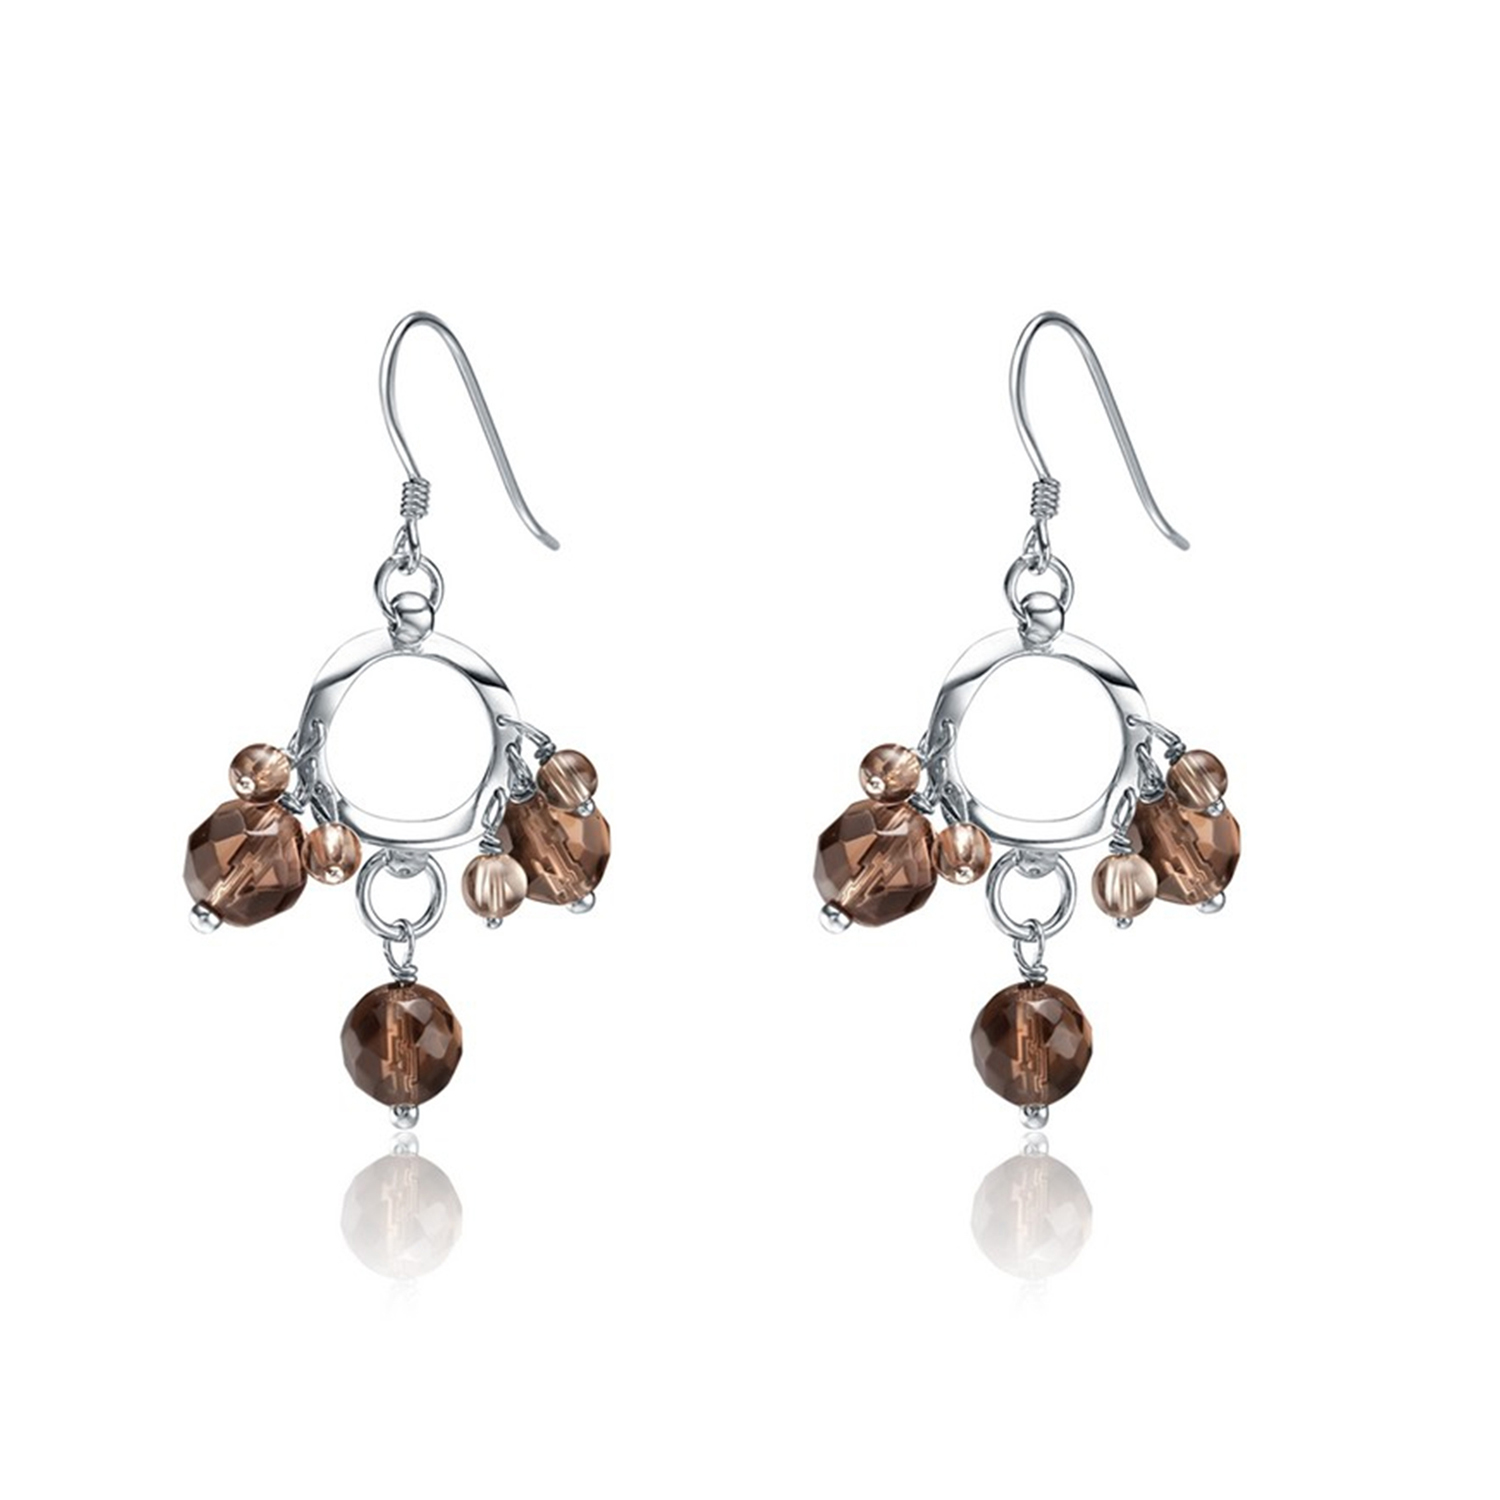 Jewelry Manfacturer sterling silver hook earring glass pendant women jewelry drop earring(图2)